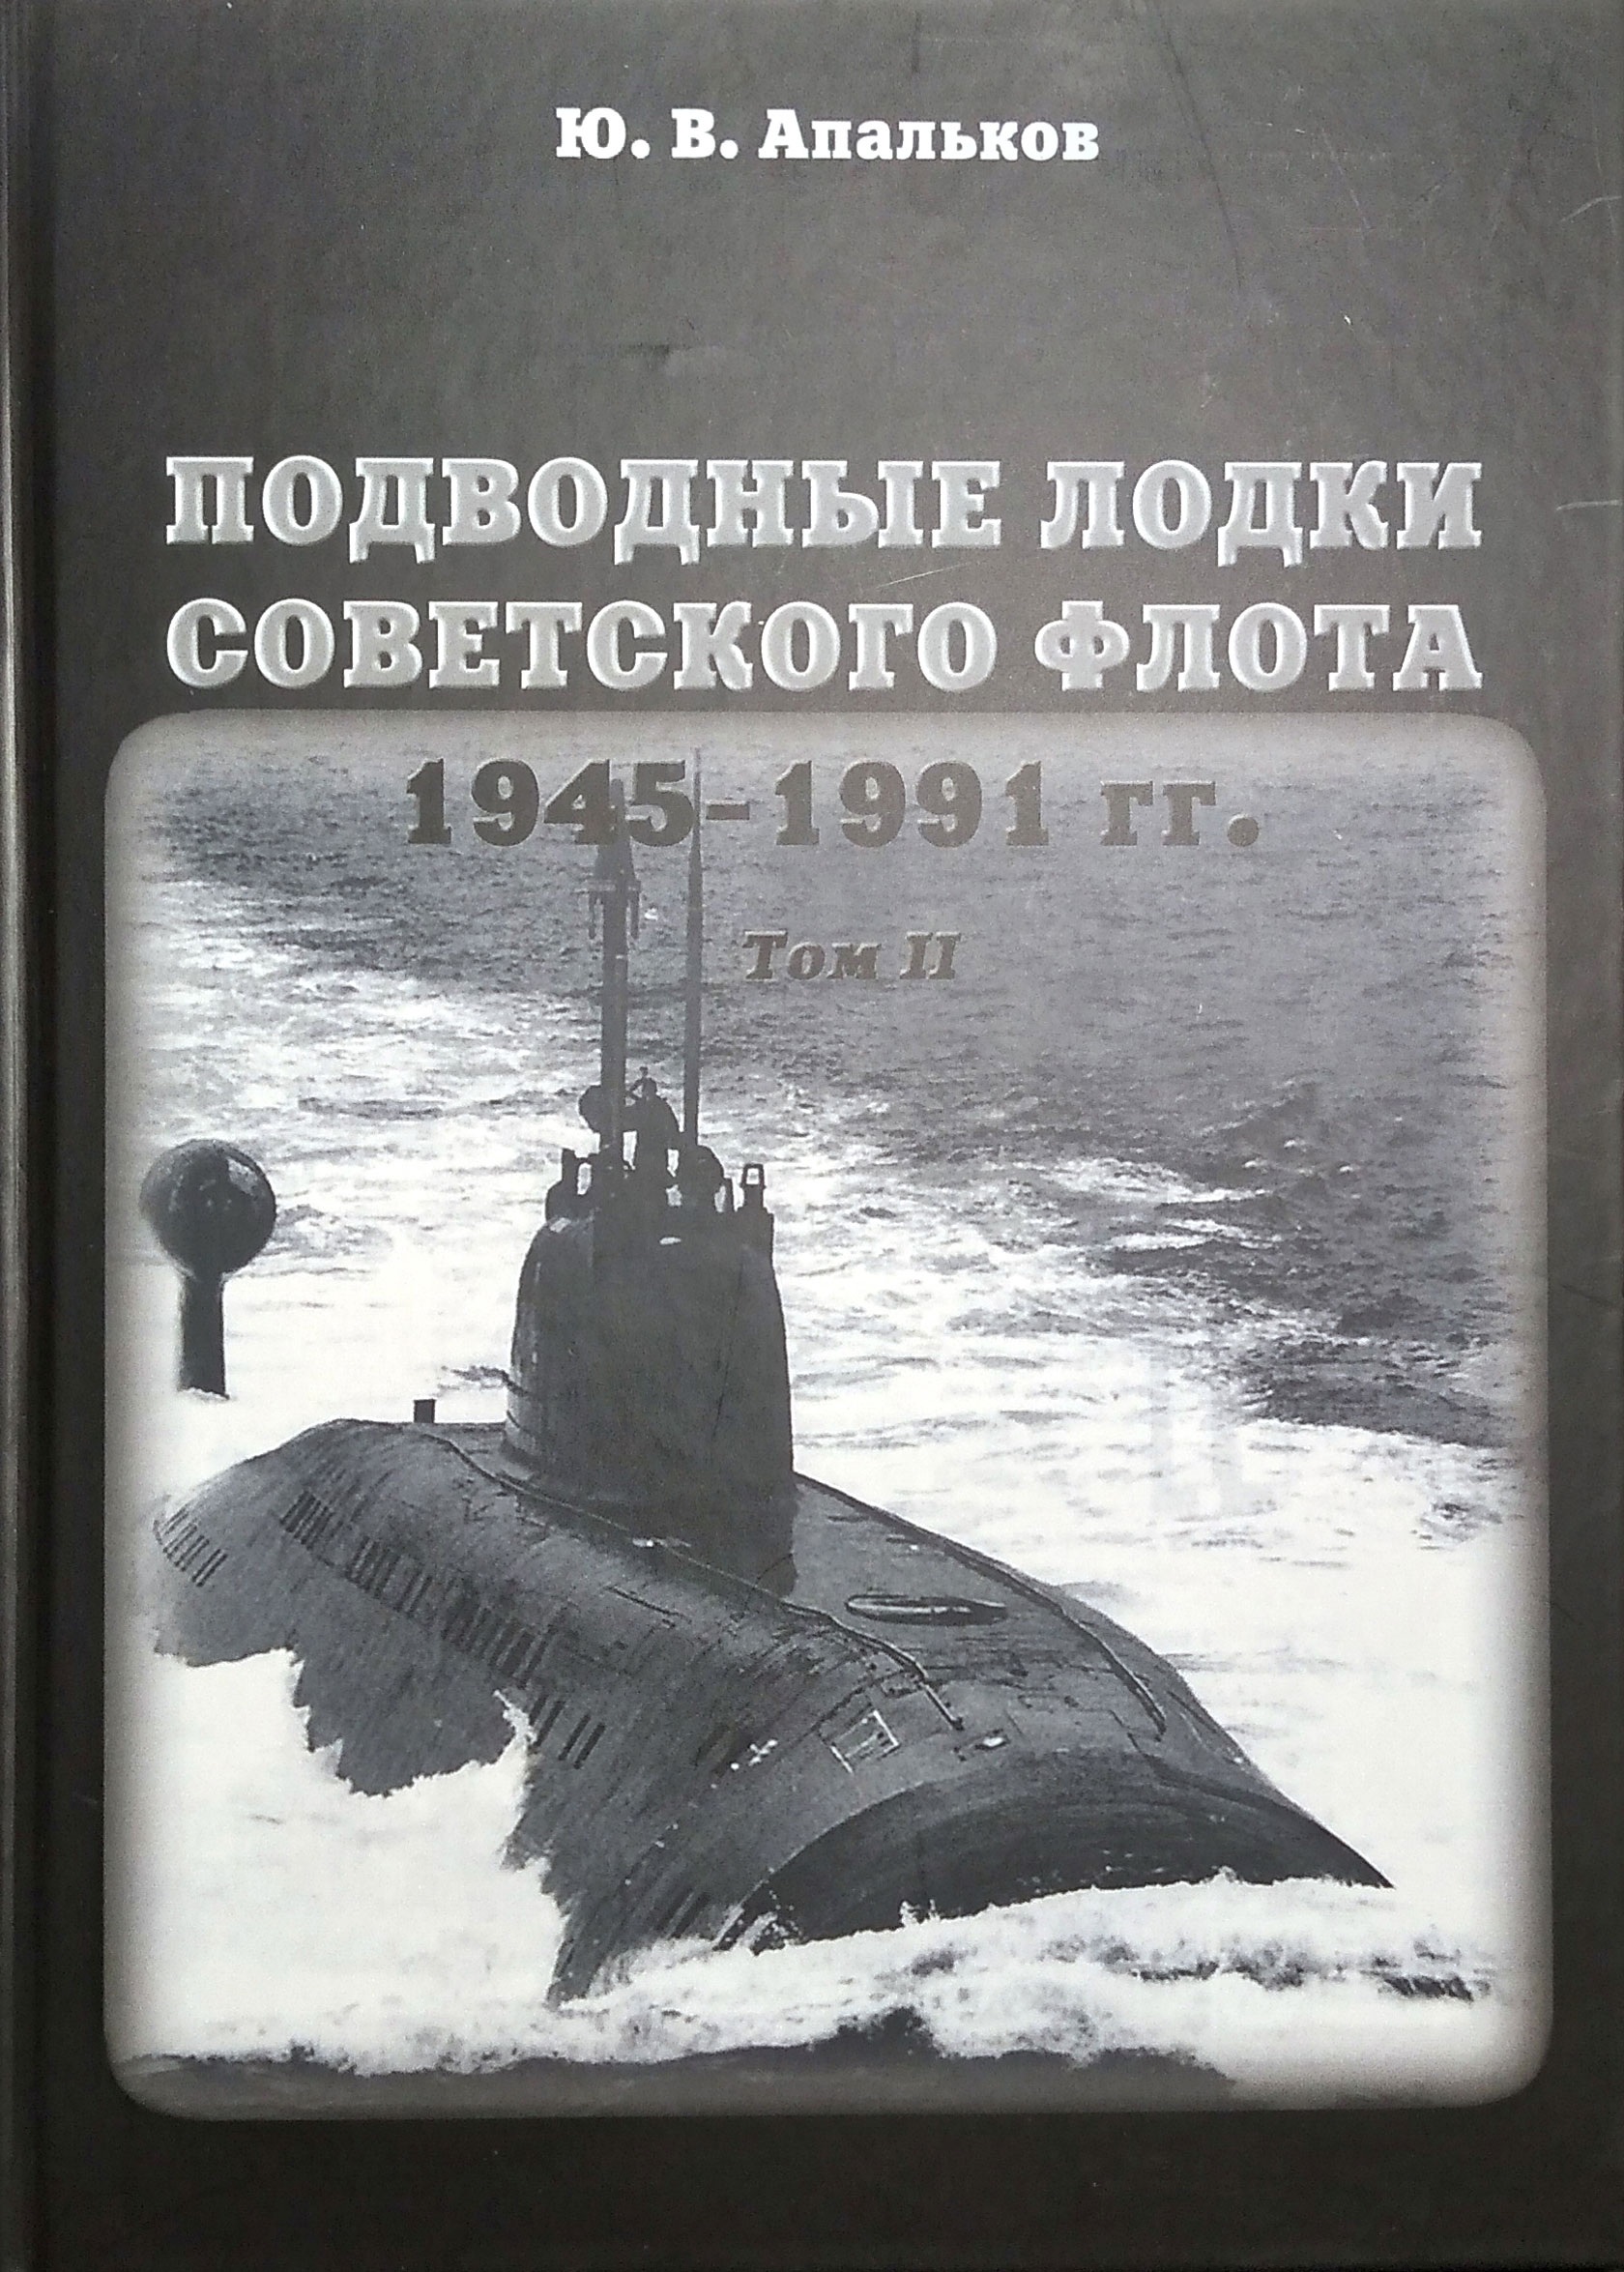     1945-1991 .  2 ()